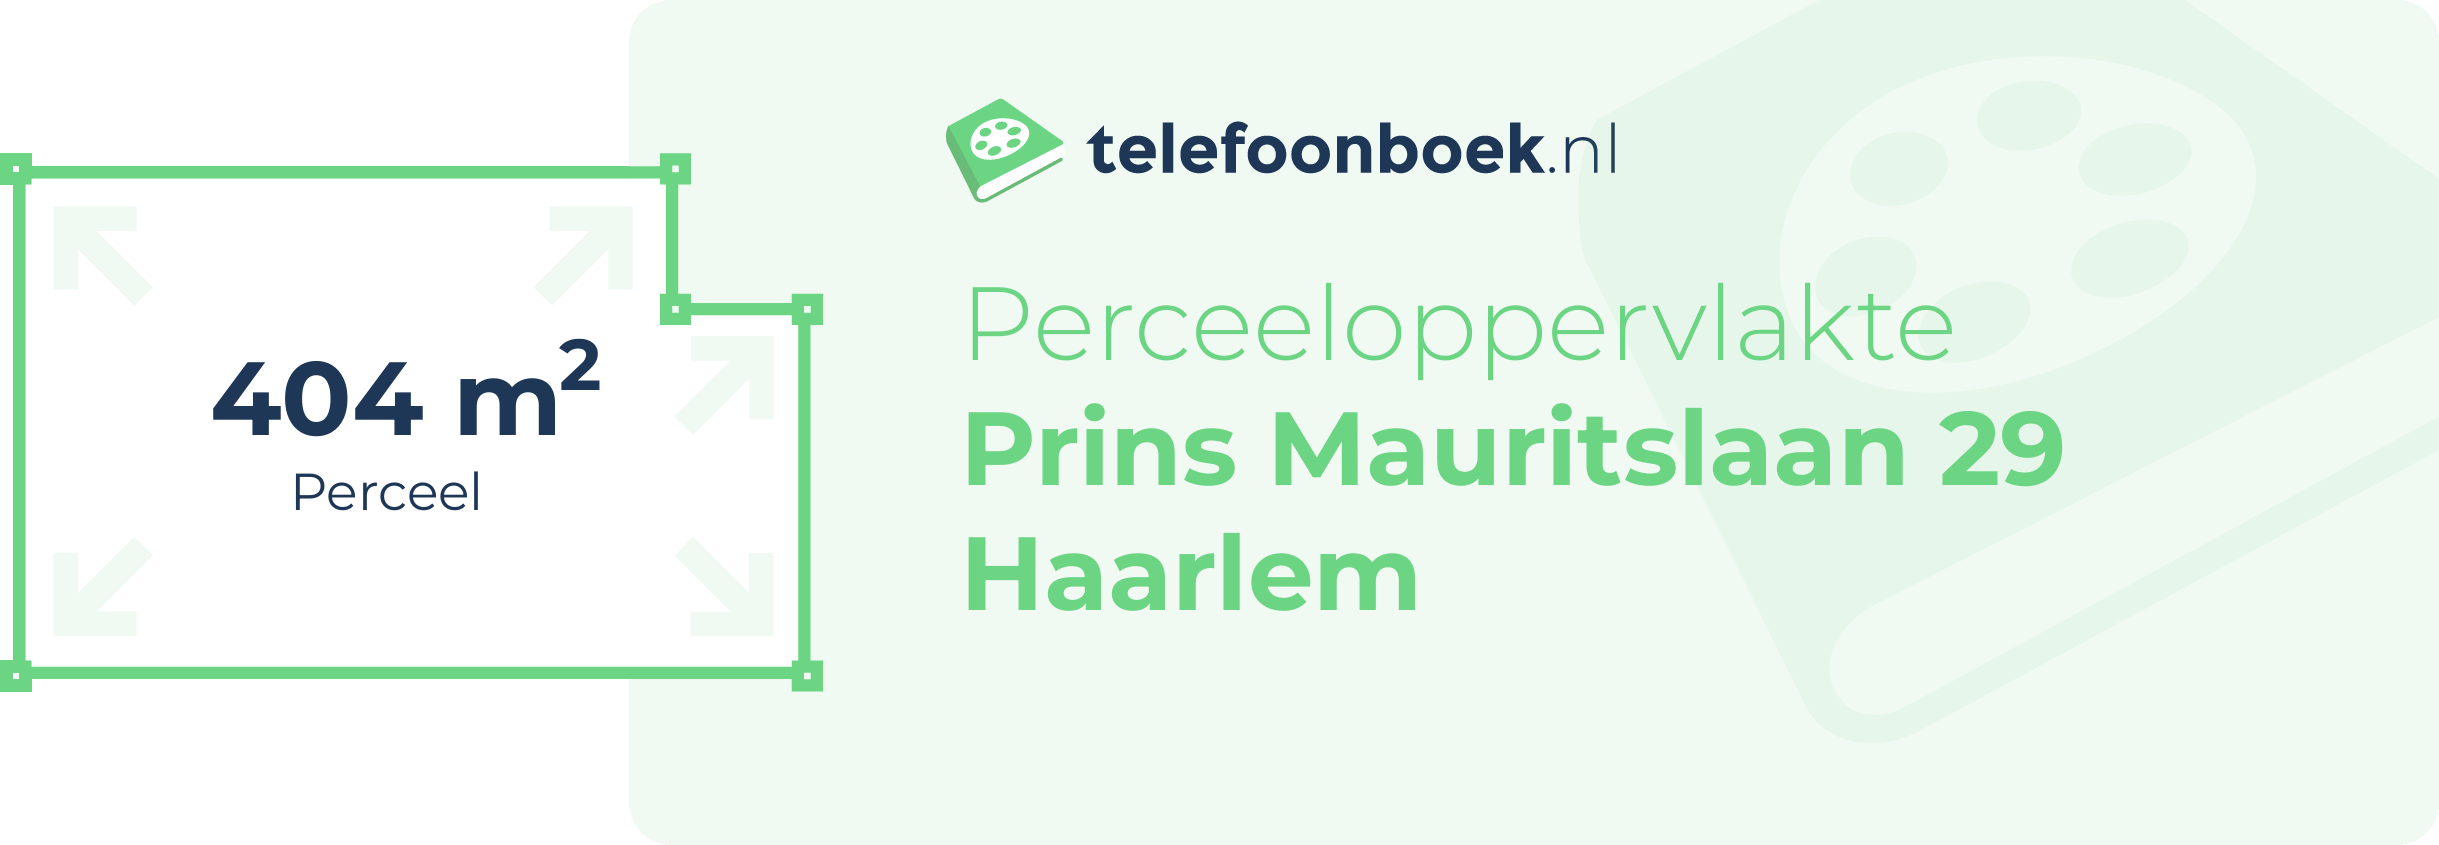 Perceeloppervlakte Prins Mauritslaan 29 Haarlem